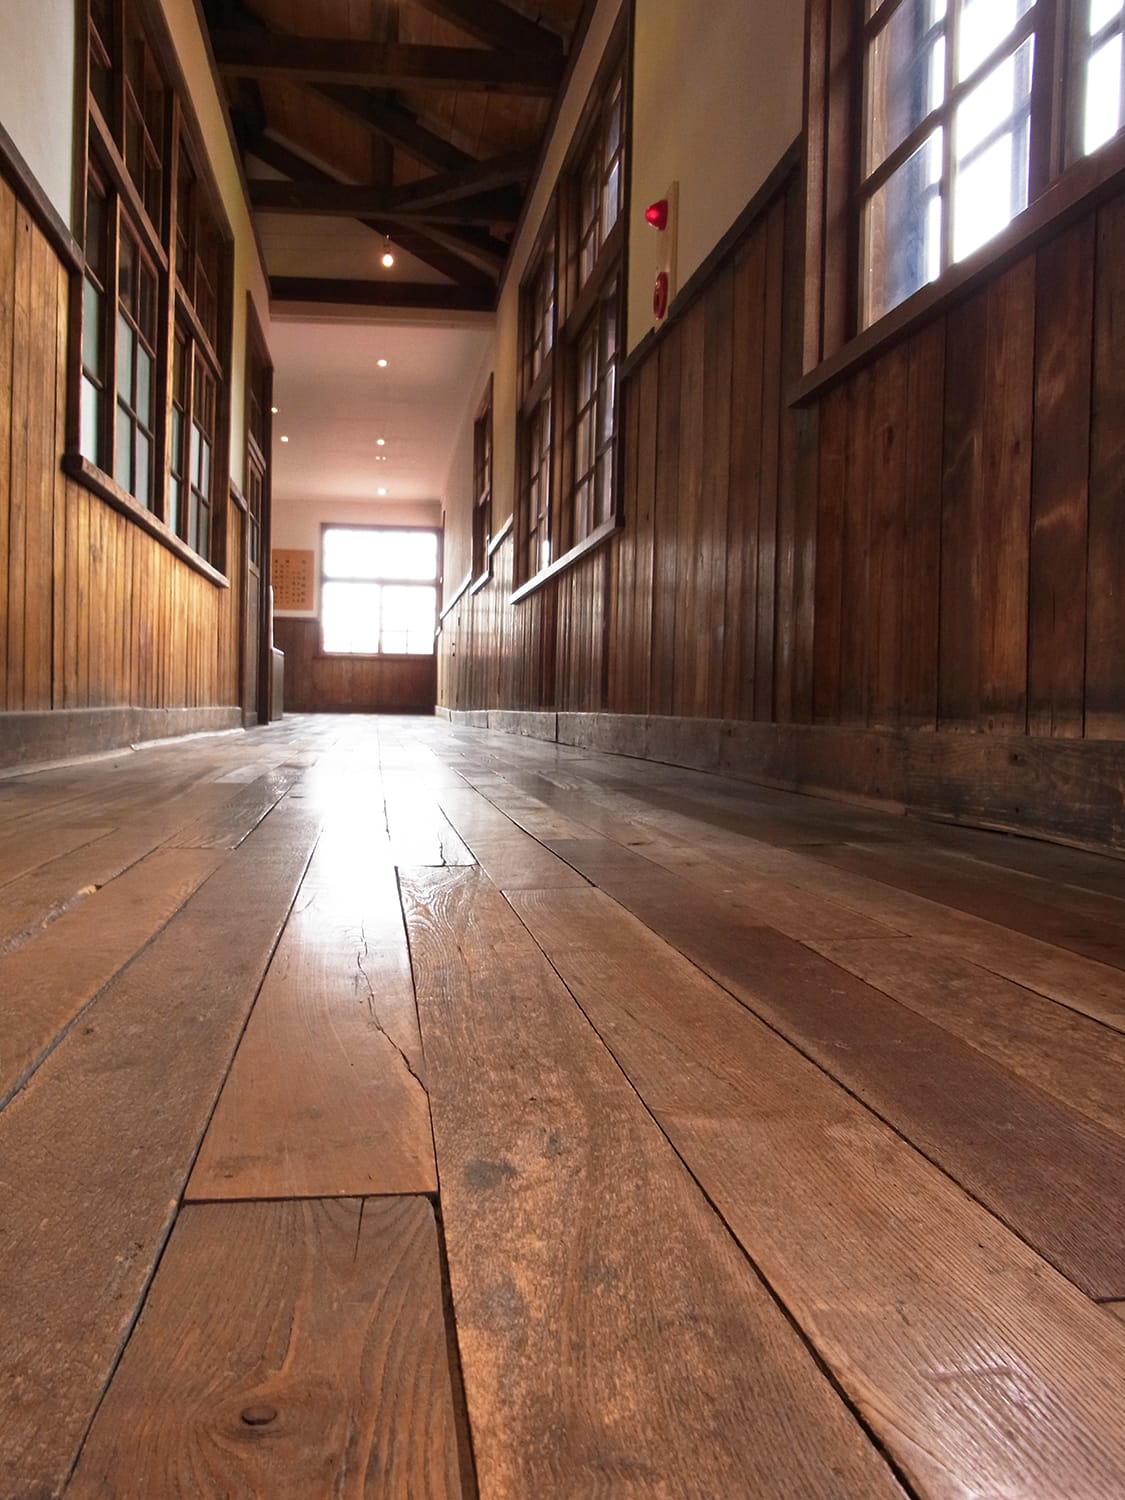 ミズナラの床板張り廊下のアルテピアッツァ美唄の古い木造校舎